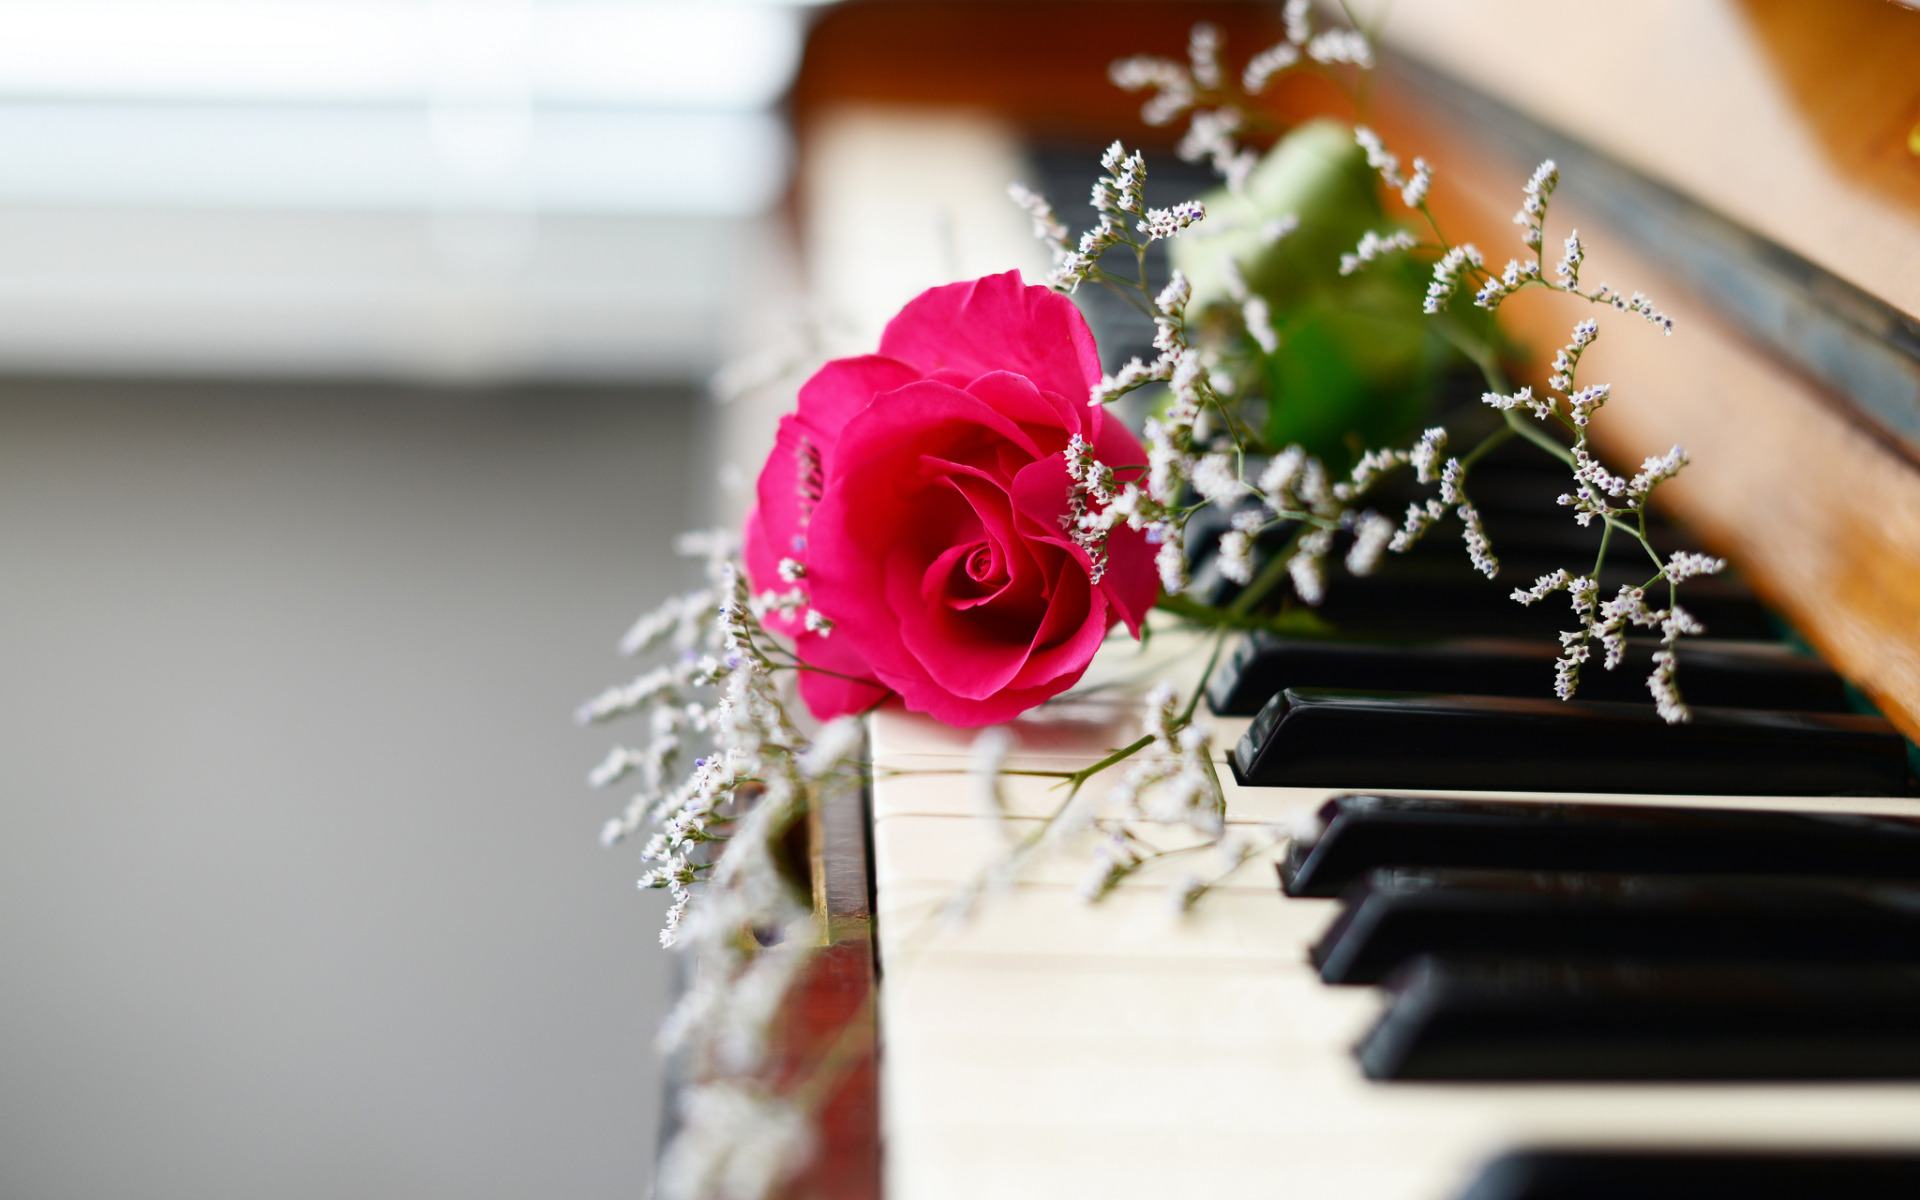 Музыкальный букет цветов. Картинки пианино и цветы. Цветы на рояле. Музыкальные инструменты и цветы.